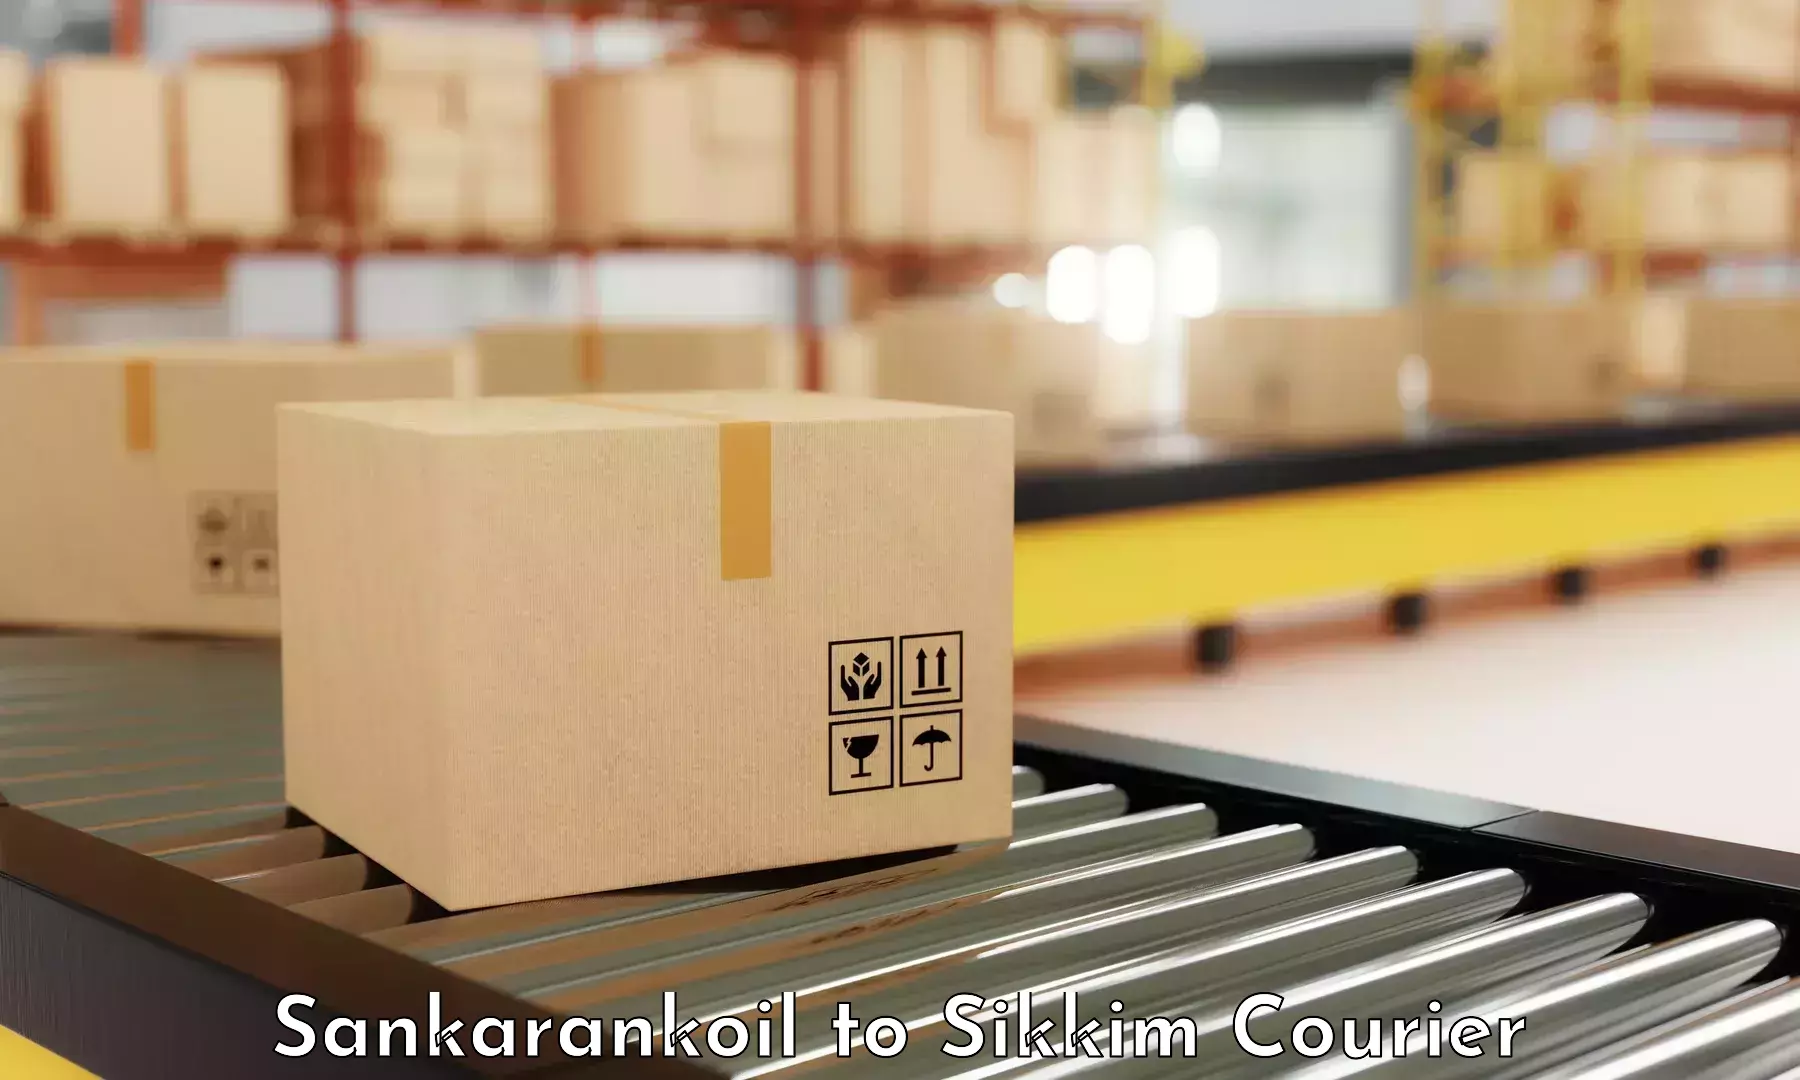 High-performance logistics Sankarankoil to Ranipool